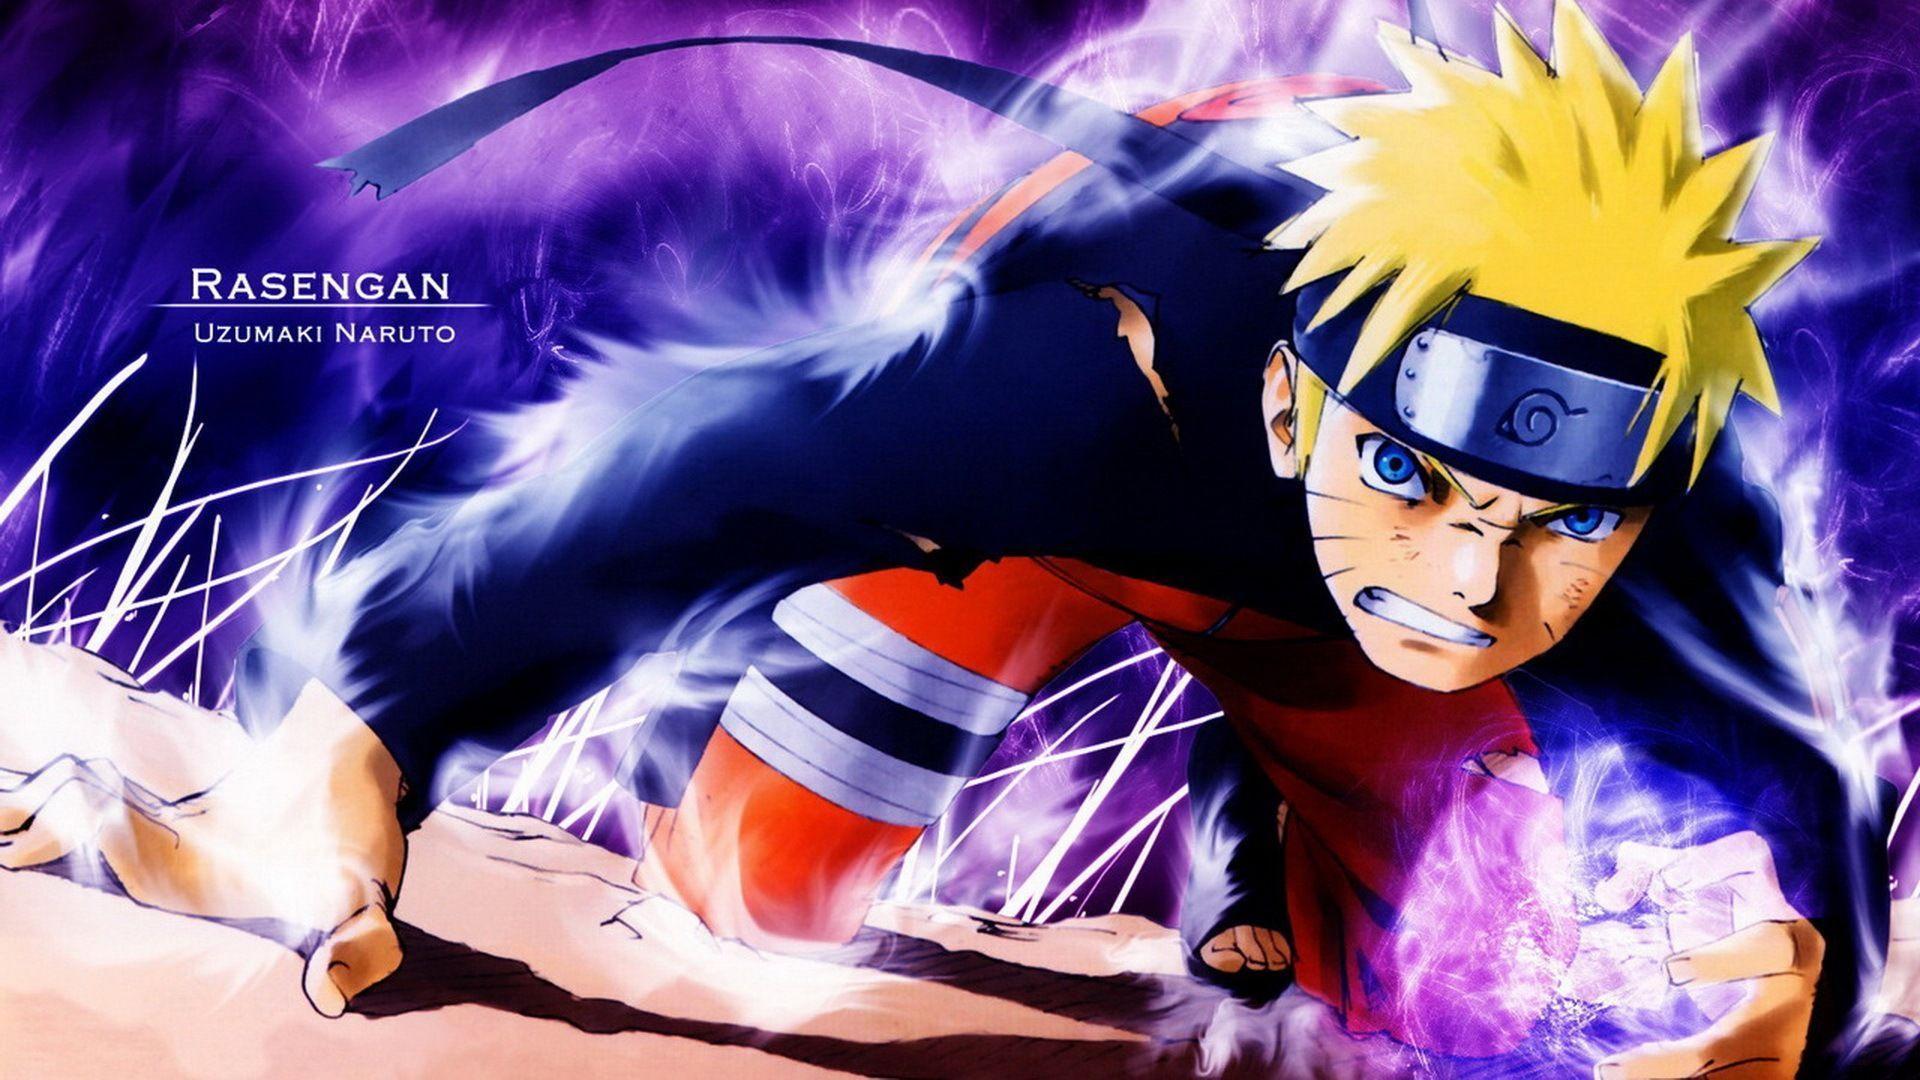 Cool Naruto,Naruto hd wallpapers,Cartoon wallpapers